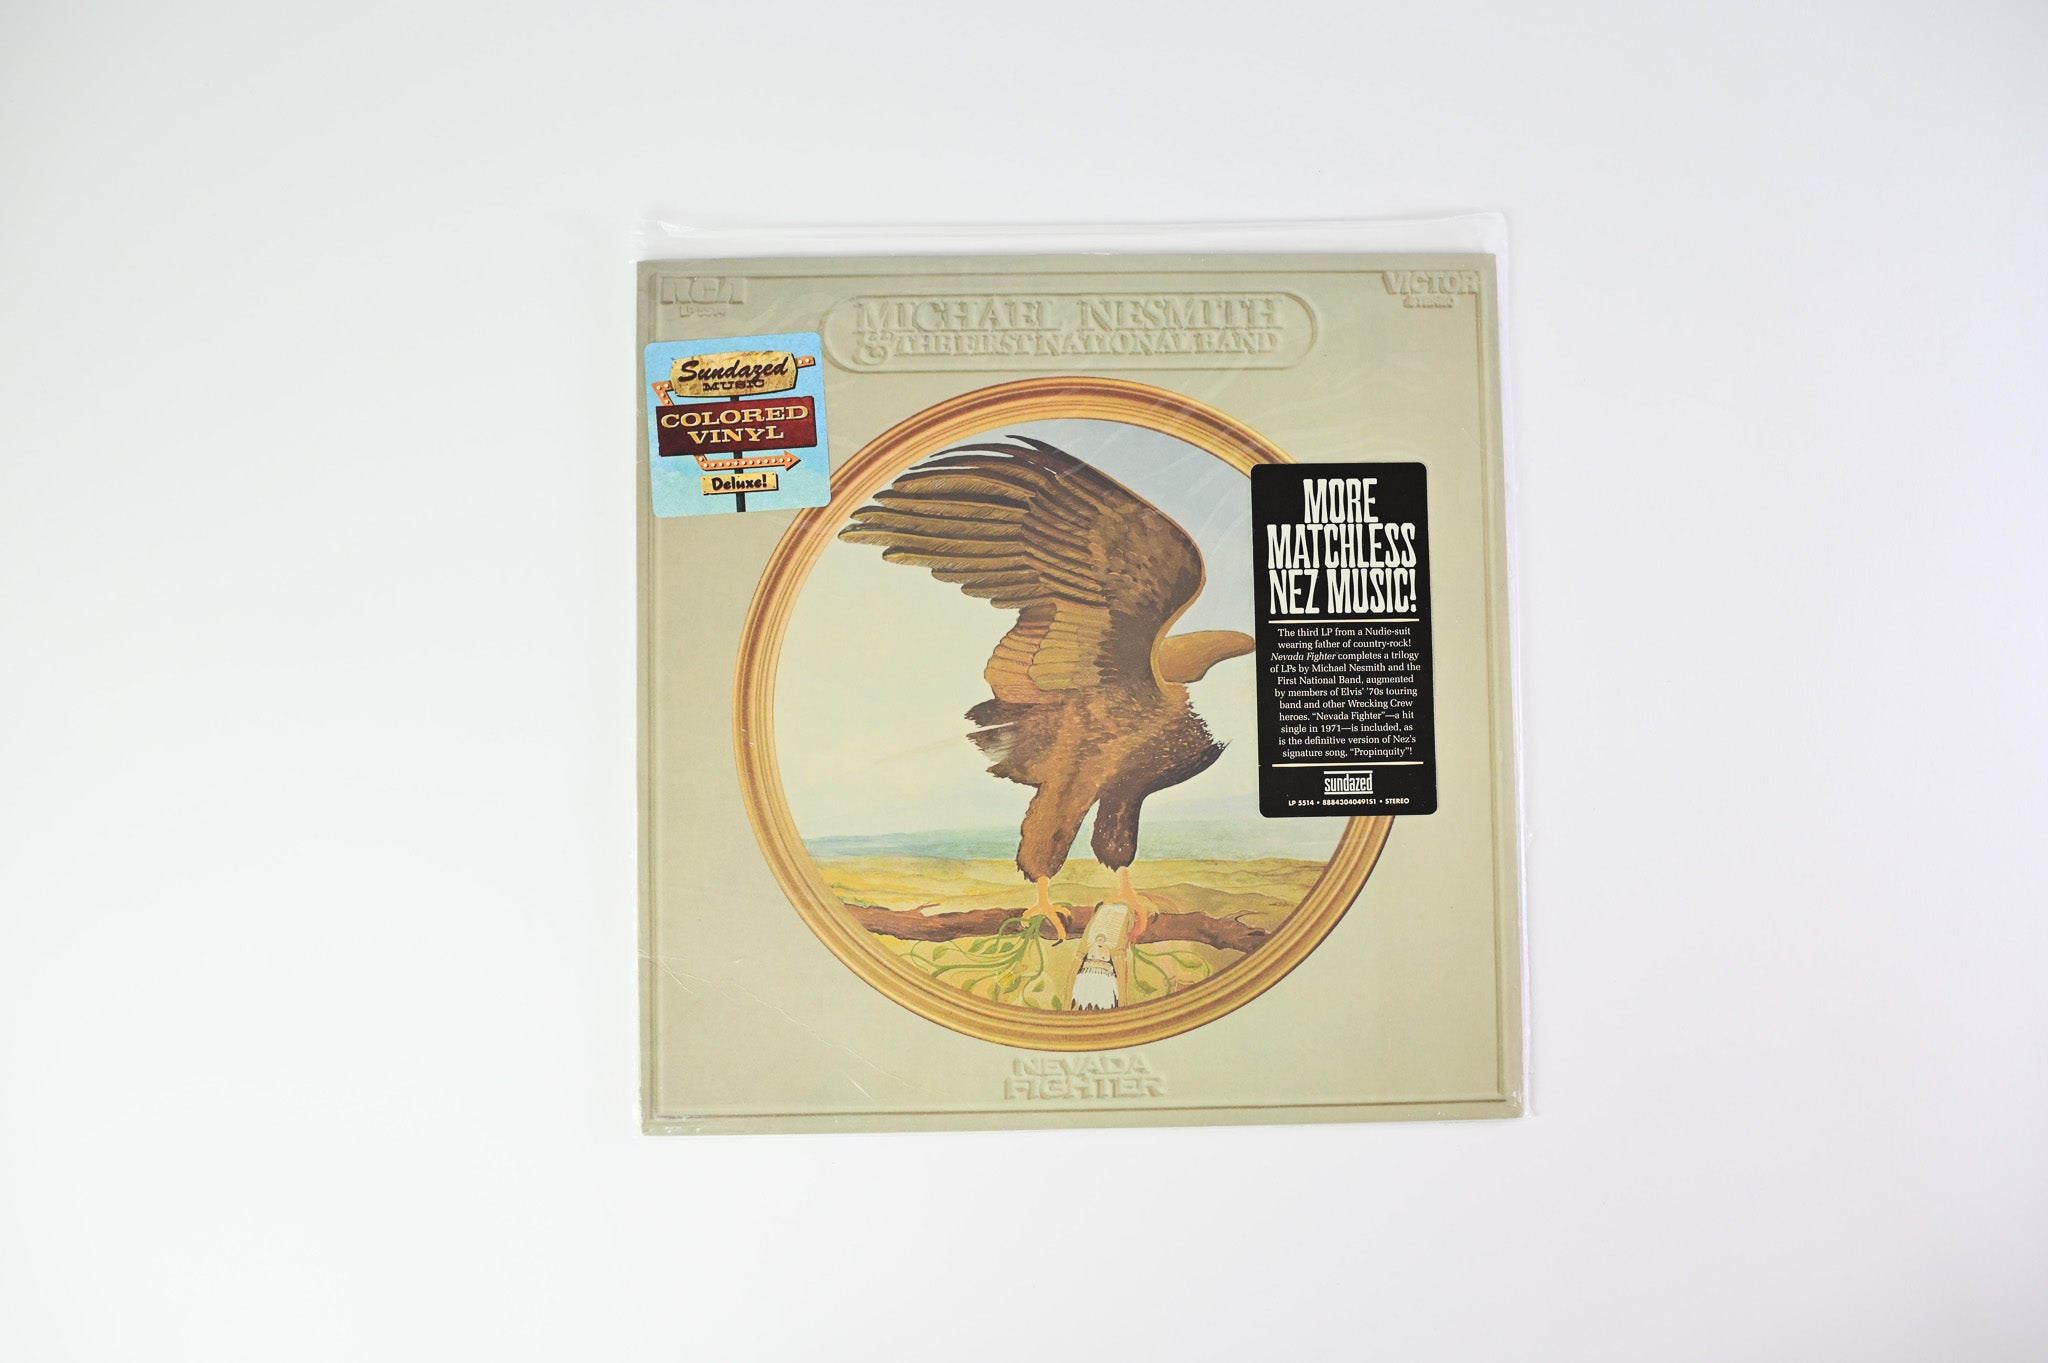 Michael Nesmith & The First National Band - Nevada Fighter on Sundazed Reissue on White Vinyl